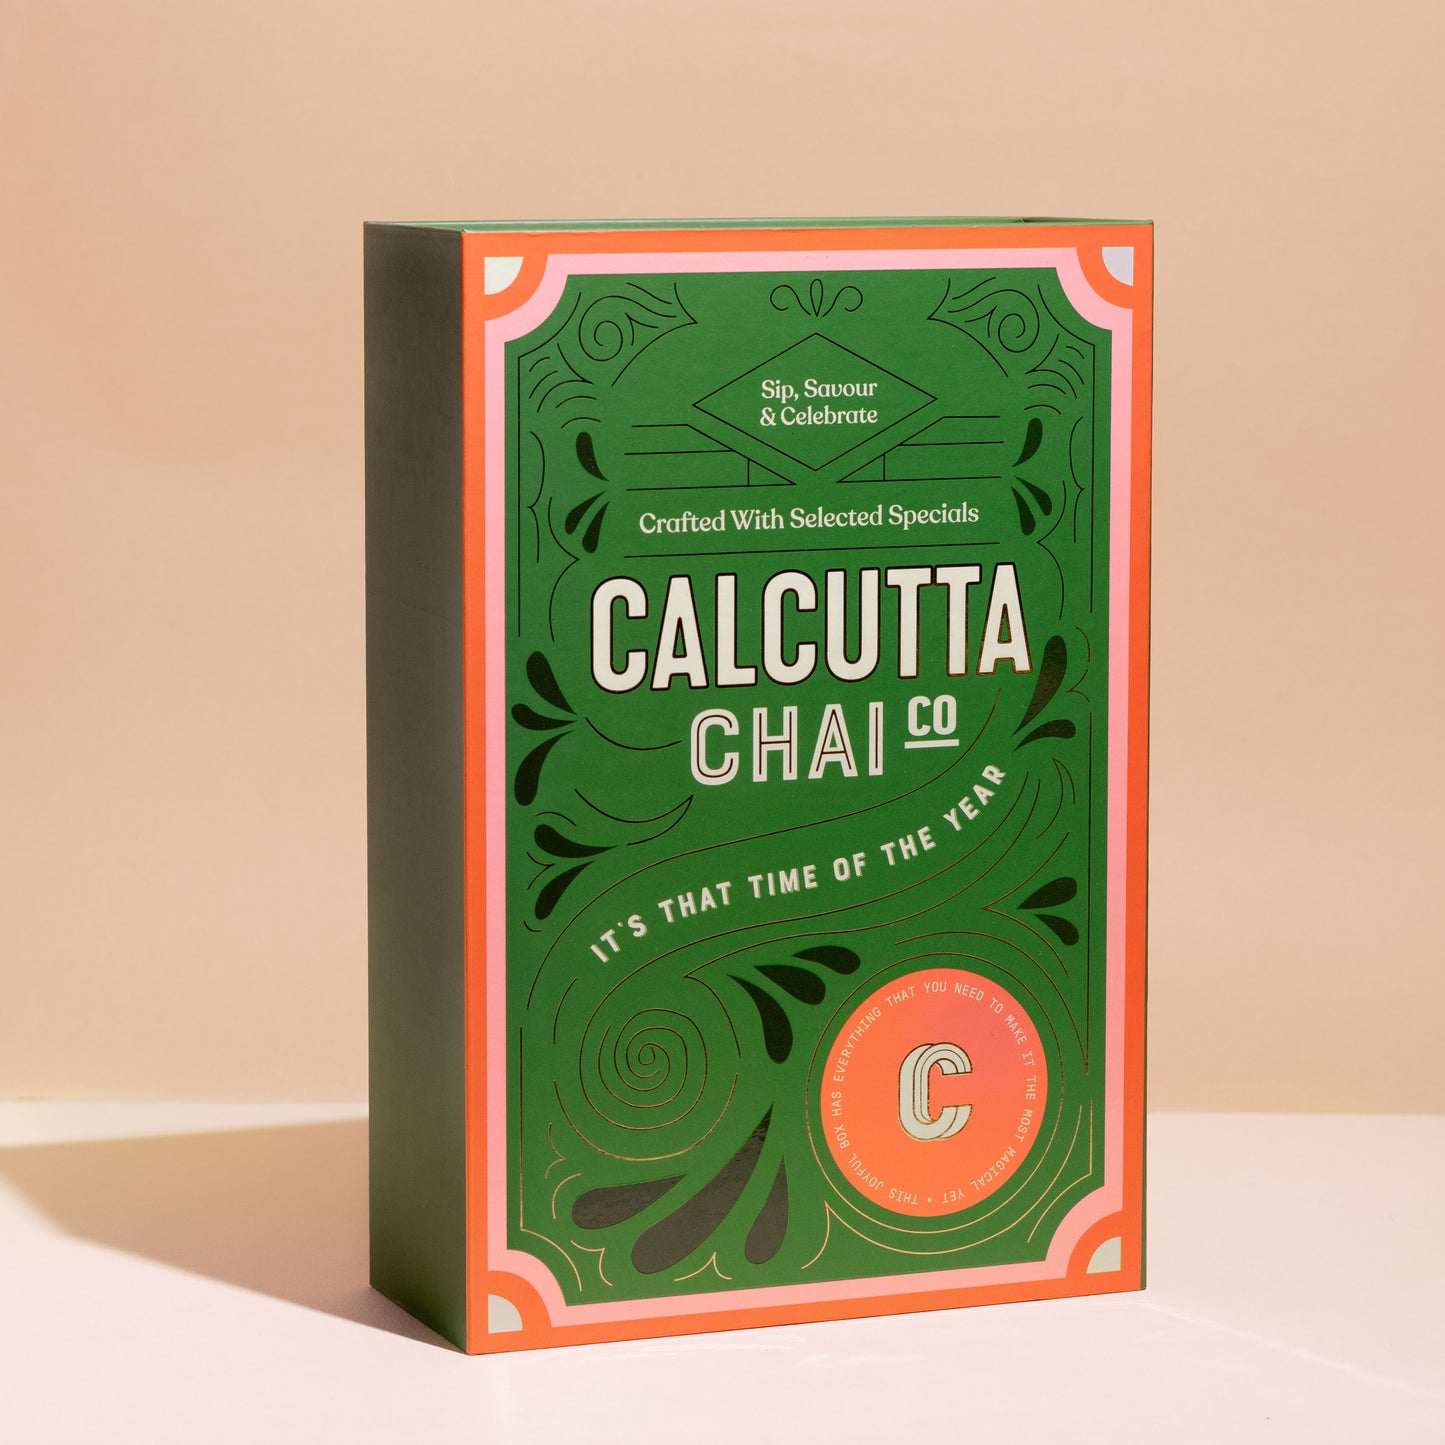 Calcutta Chai Co The Festive Gift Box - Selected Specials